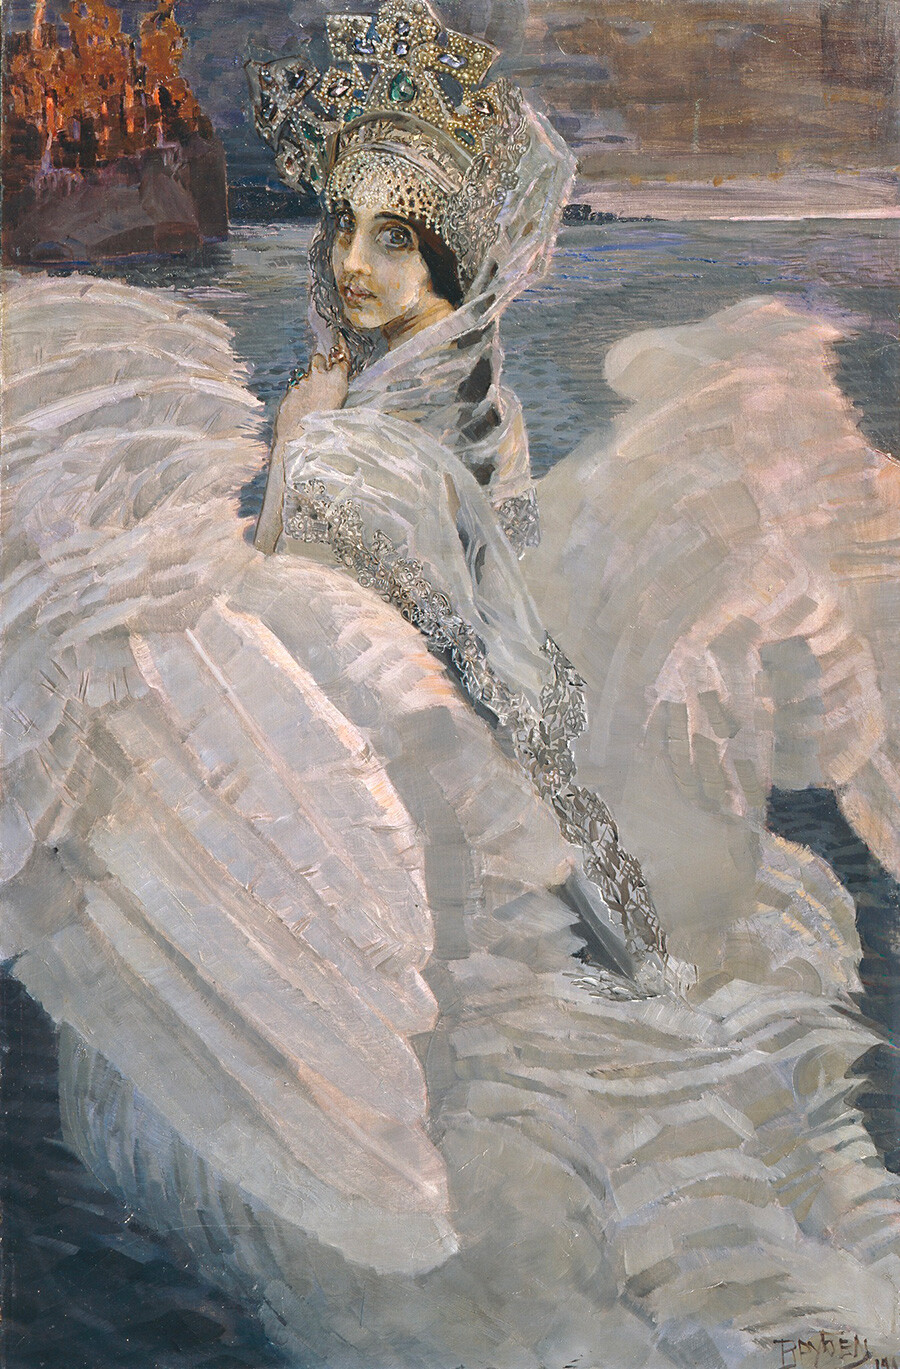 Михаил Врубель. Царевна-Лебедь, 1900